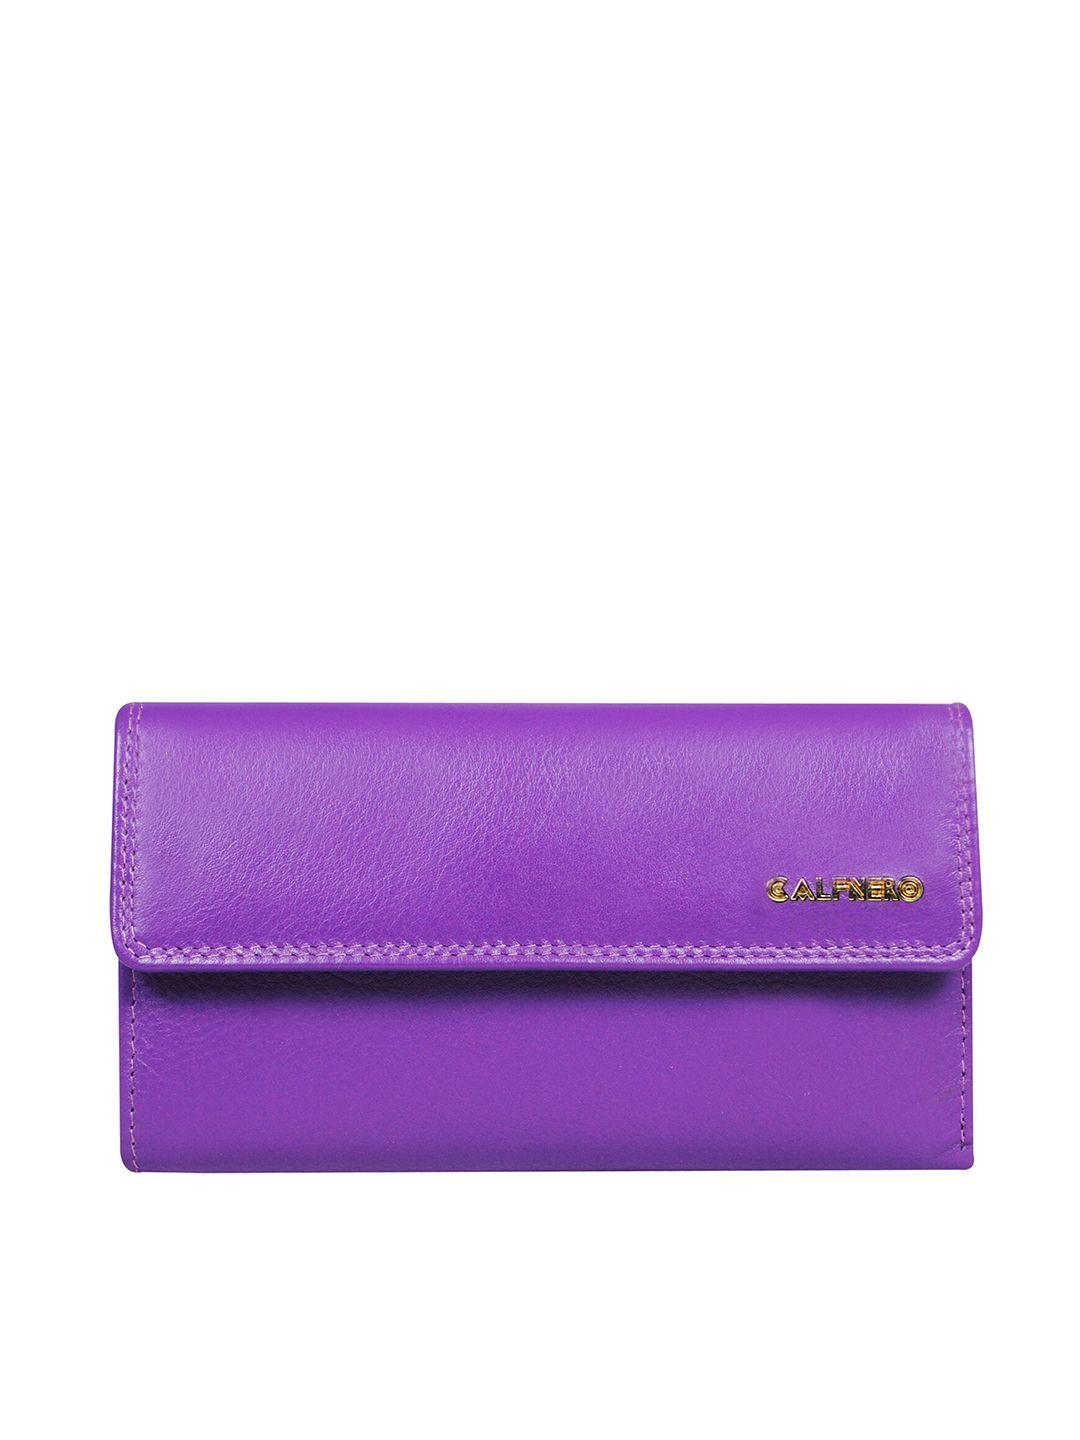 calfnero women purple leather two fold wallet